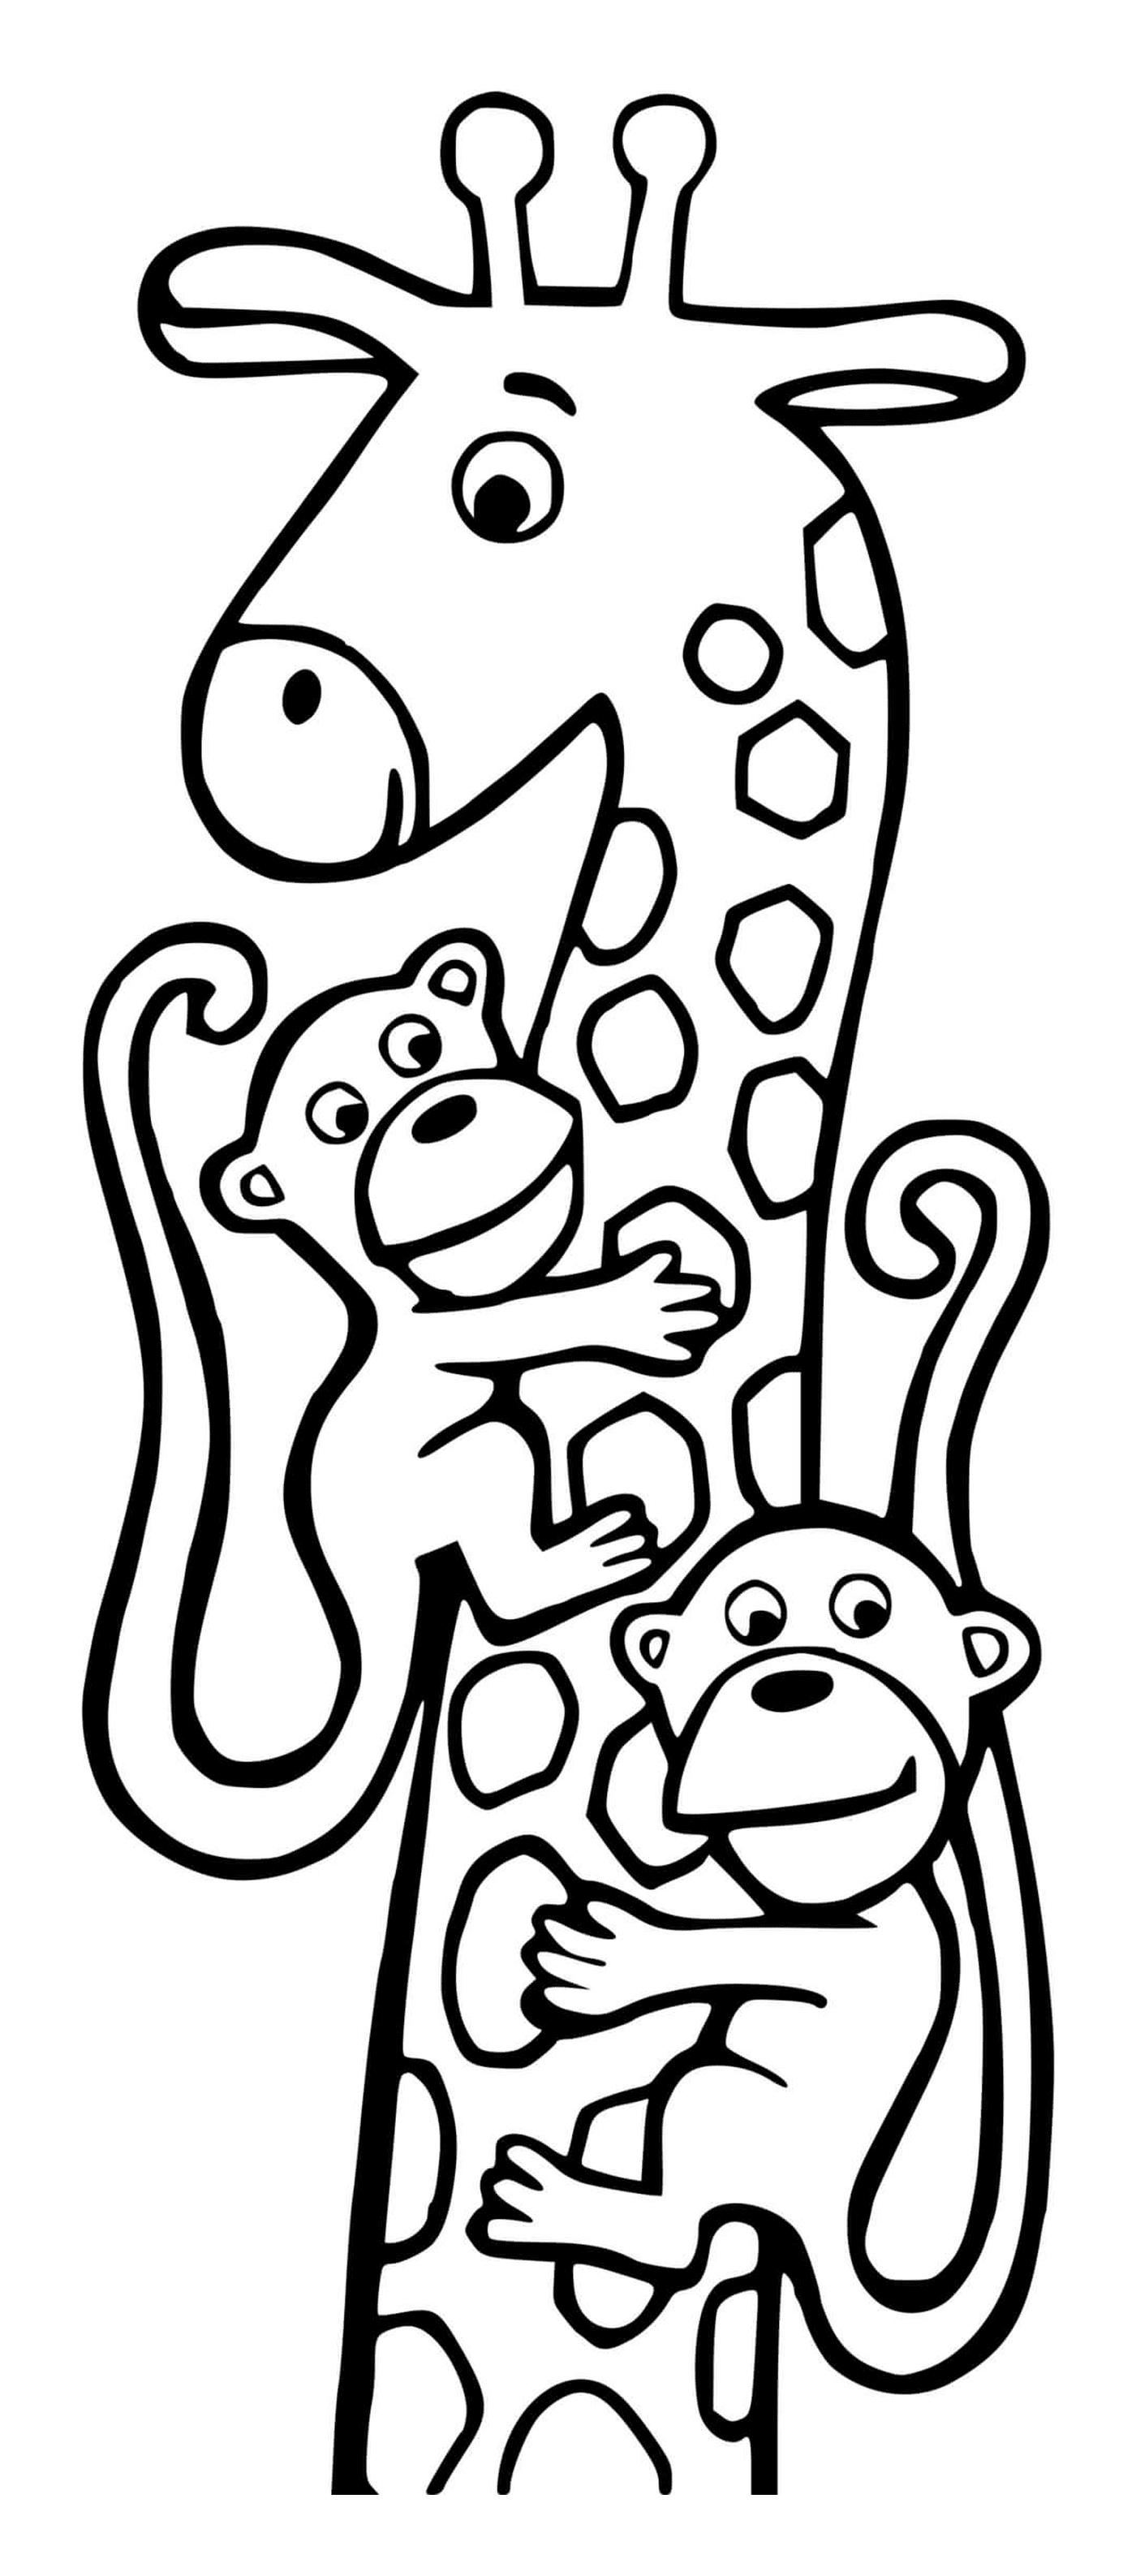  बेफ्फीक तथा दो बंदर 